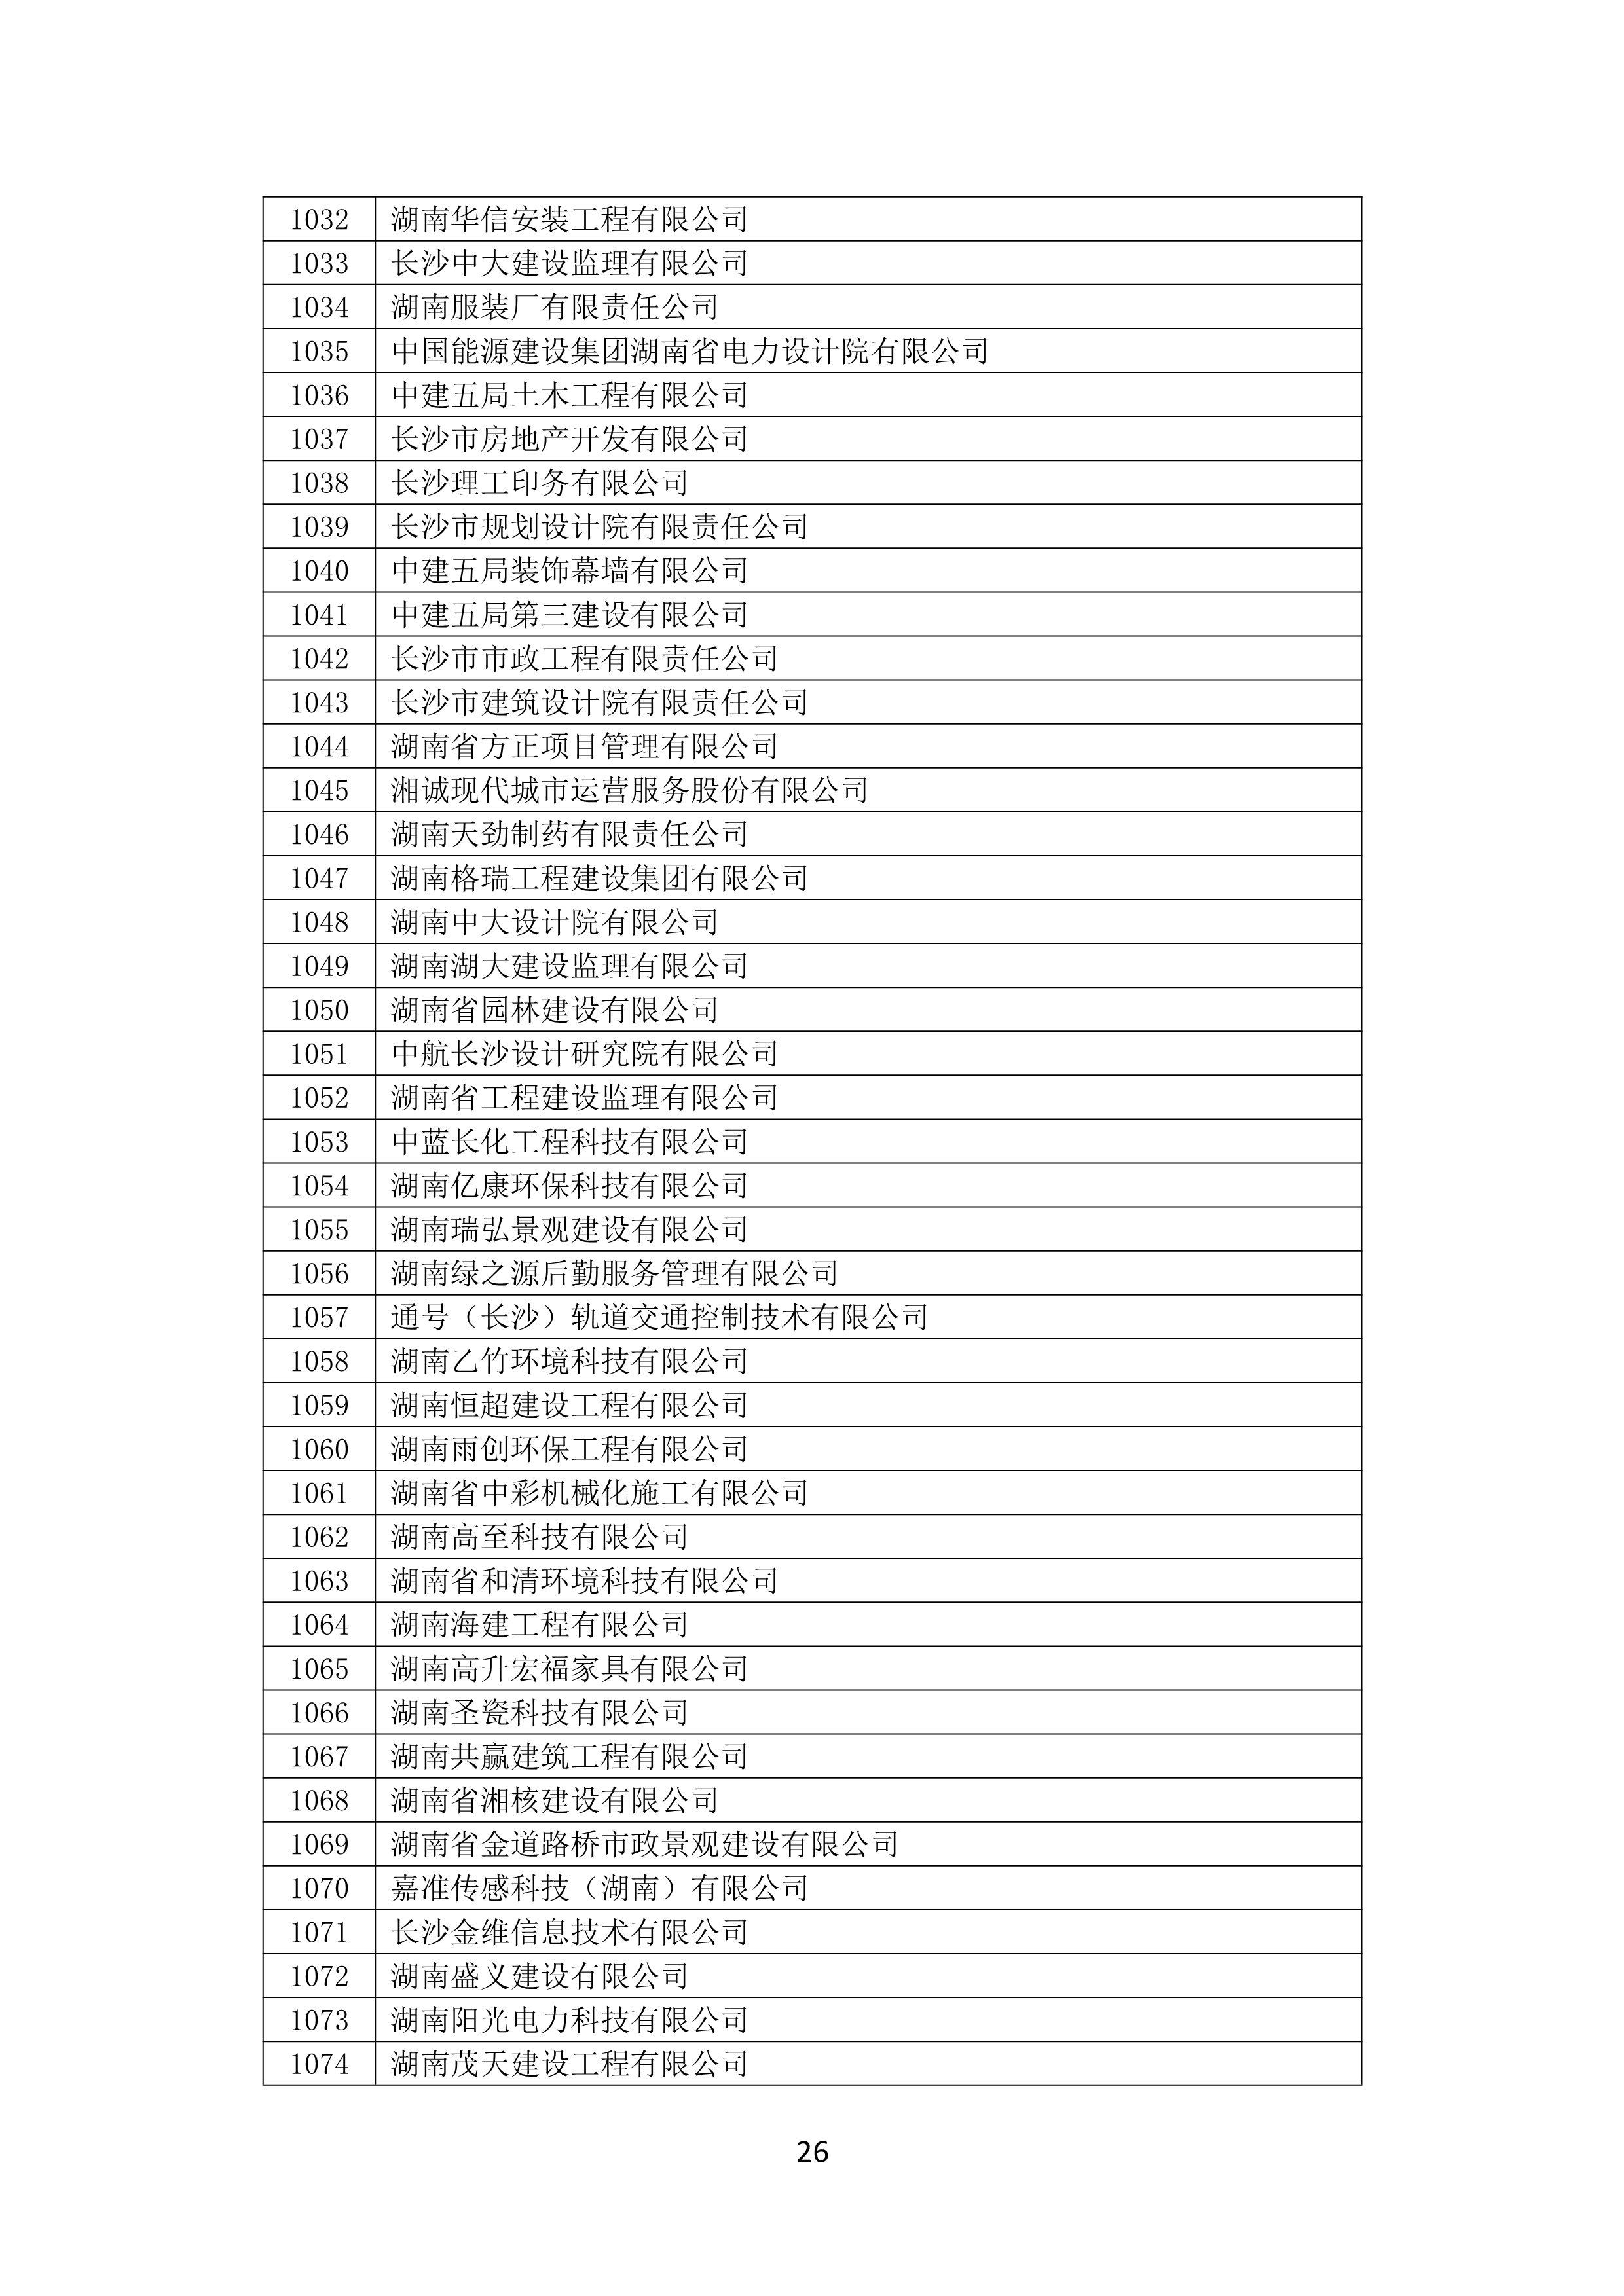 2021 年(nián)度湖南省守合同重信用企業名單_27.png